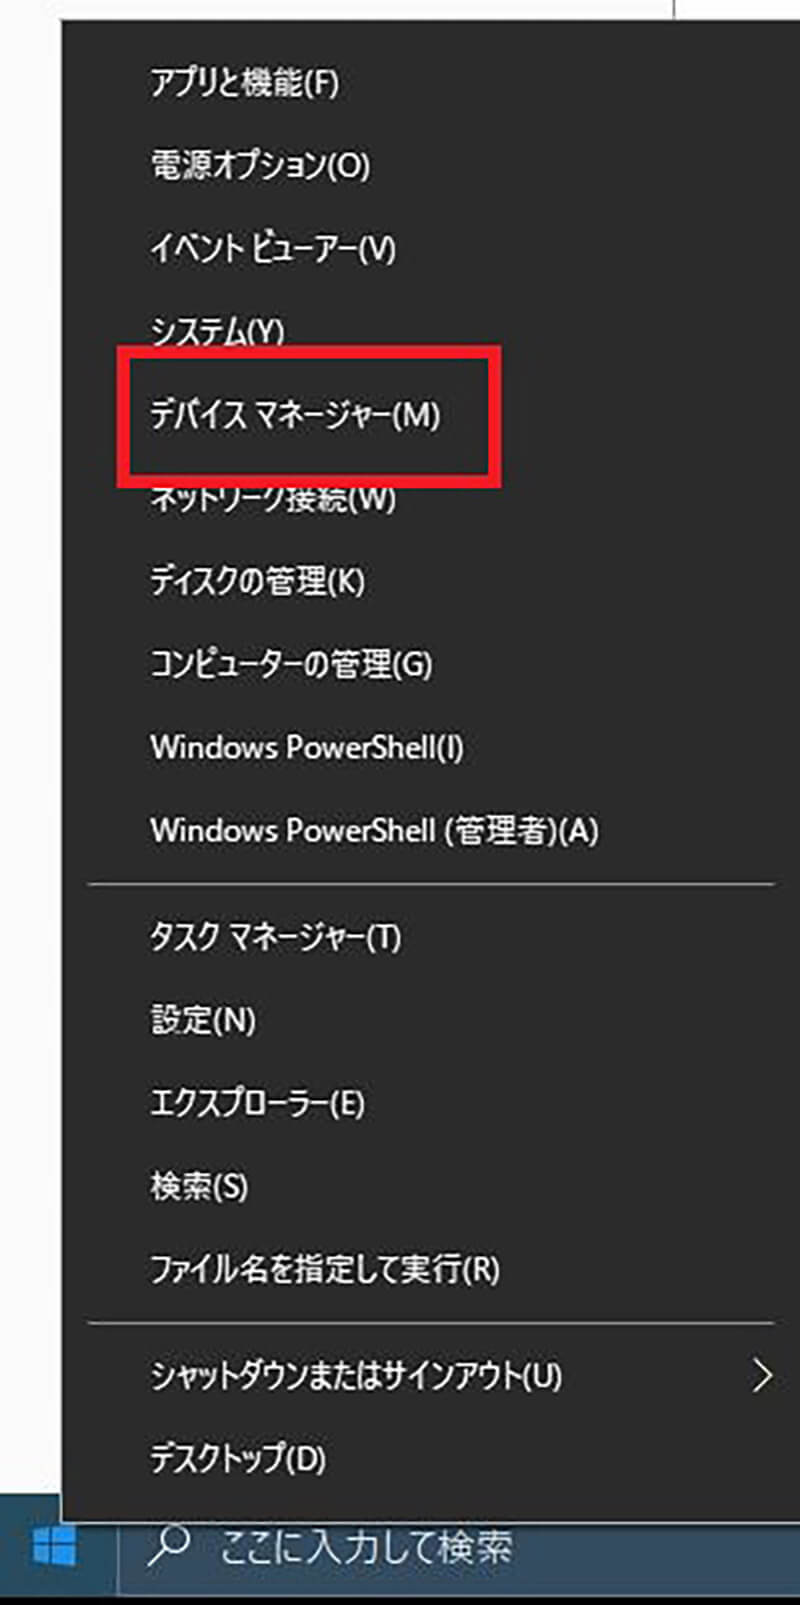 【Windows 10】バージョン「21H2」へのアップデートがうまくいかない時の対処法6